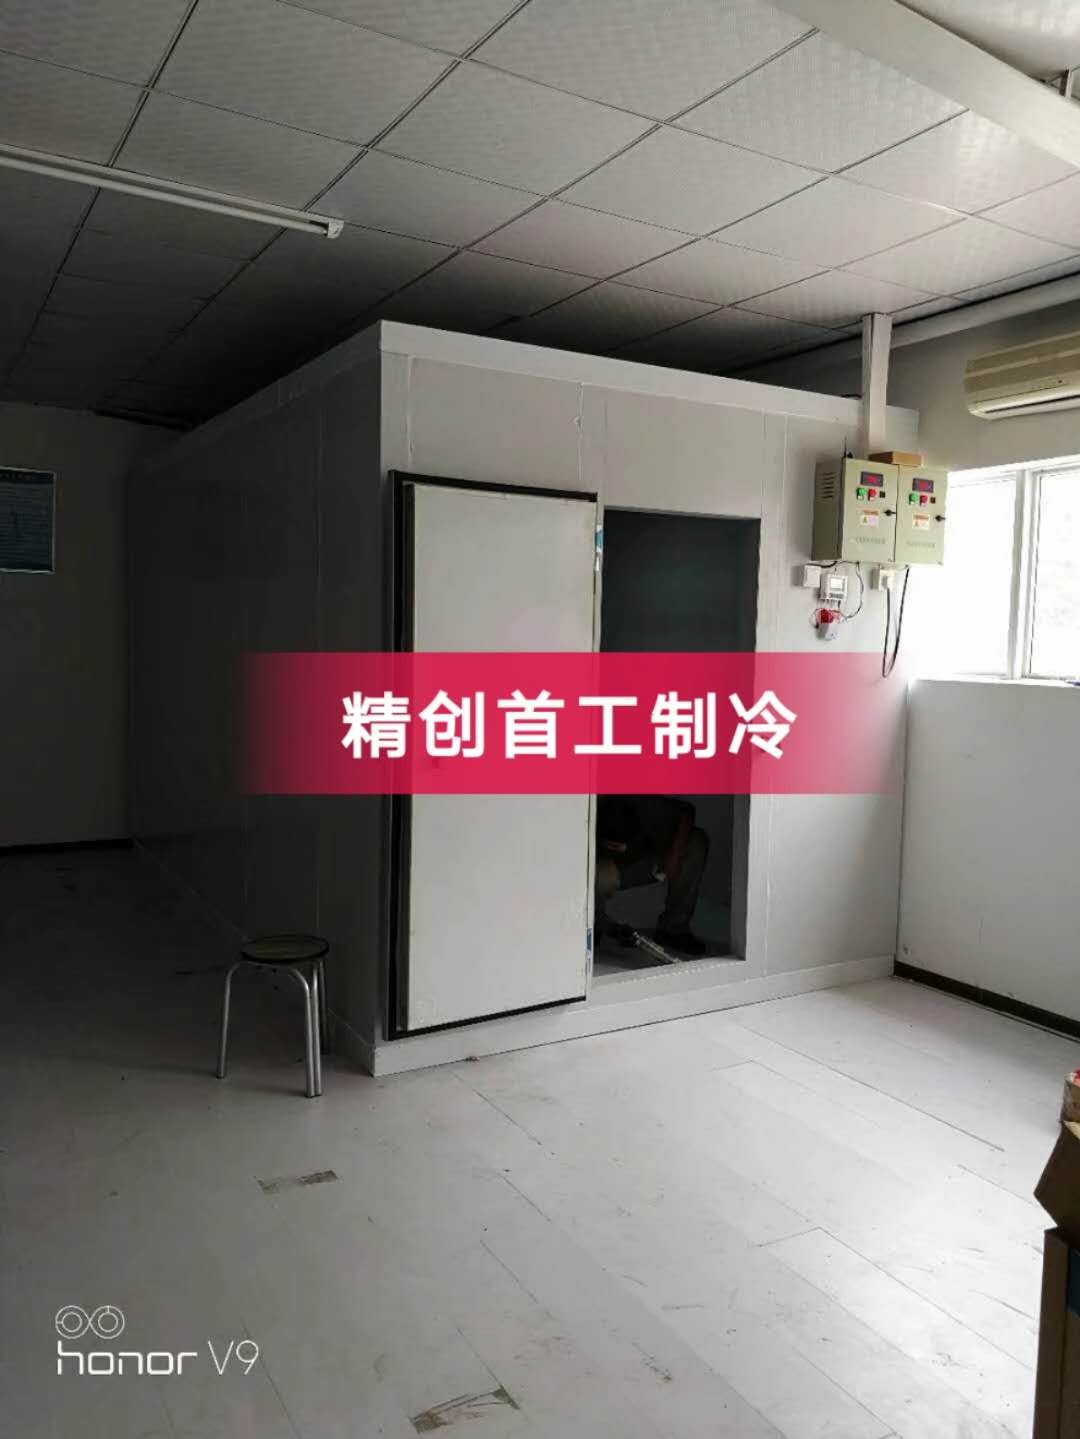 食品冷库安装 北京通州区物流冷库设计安装图片